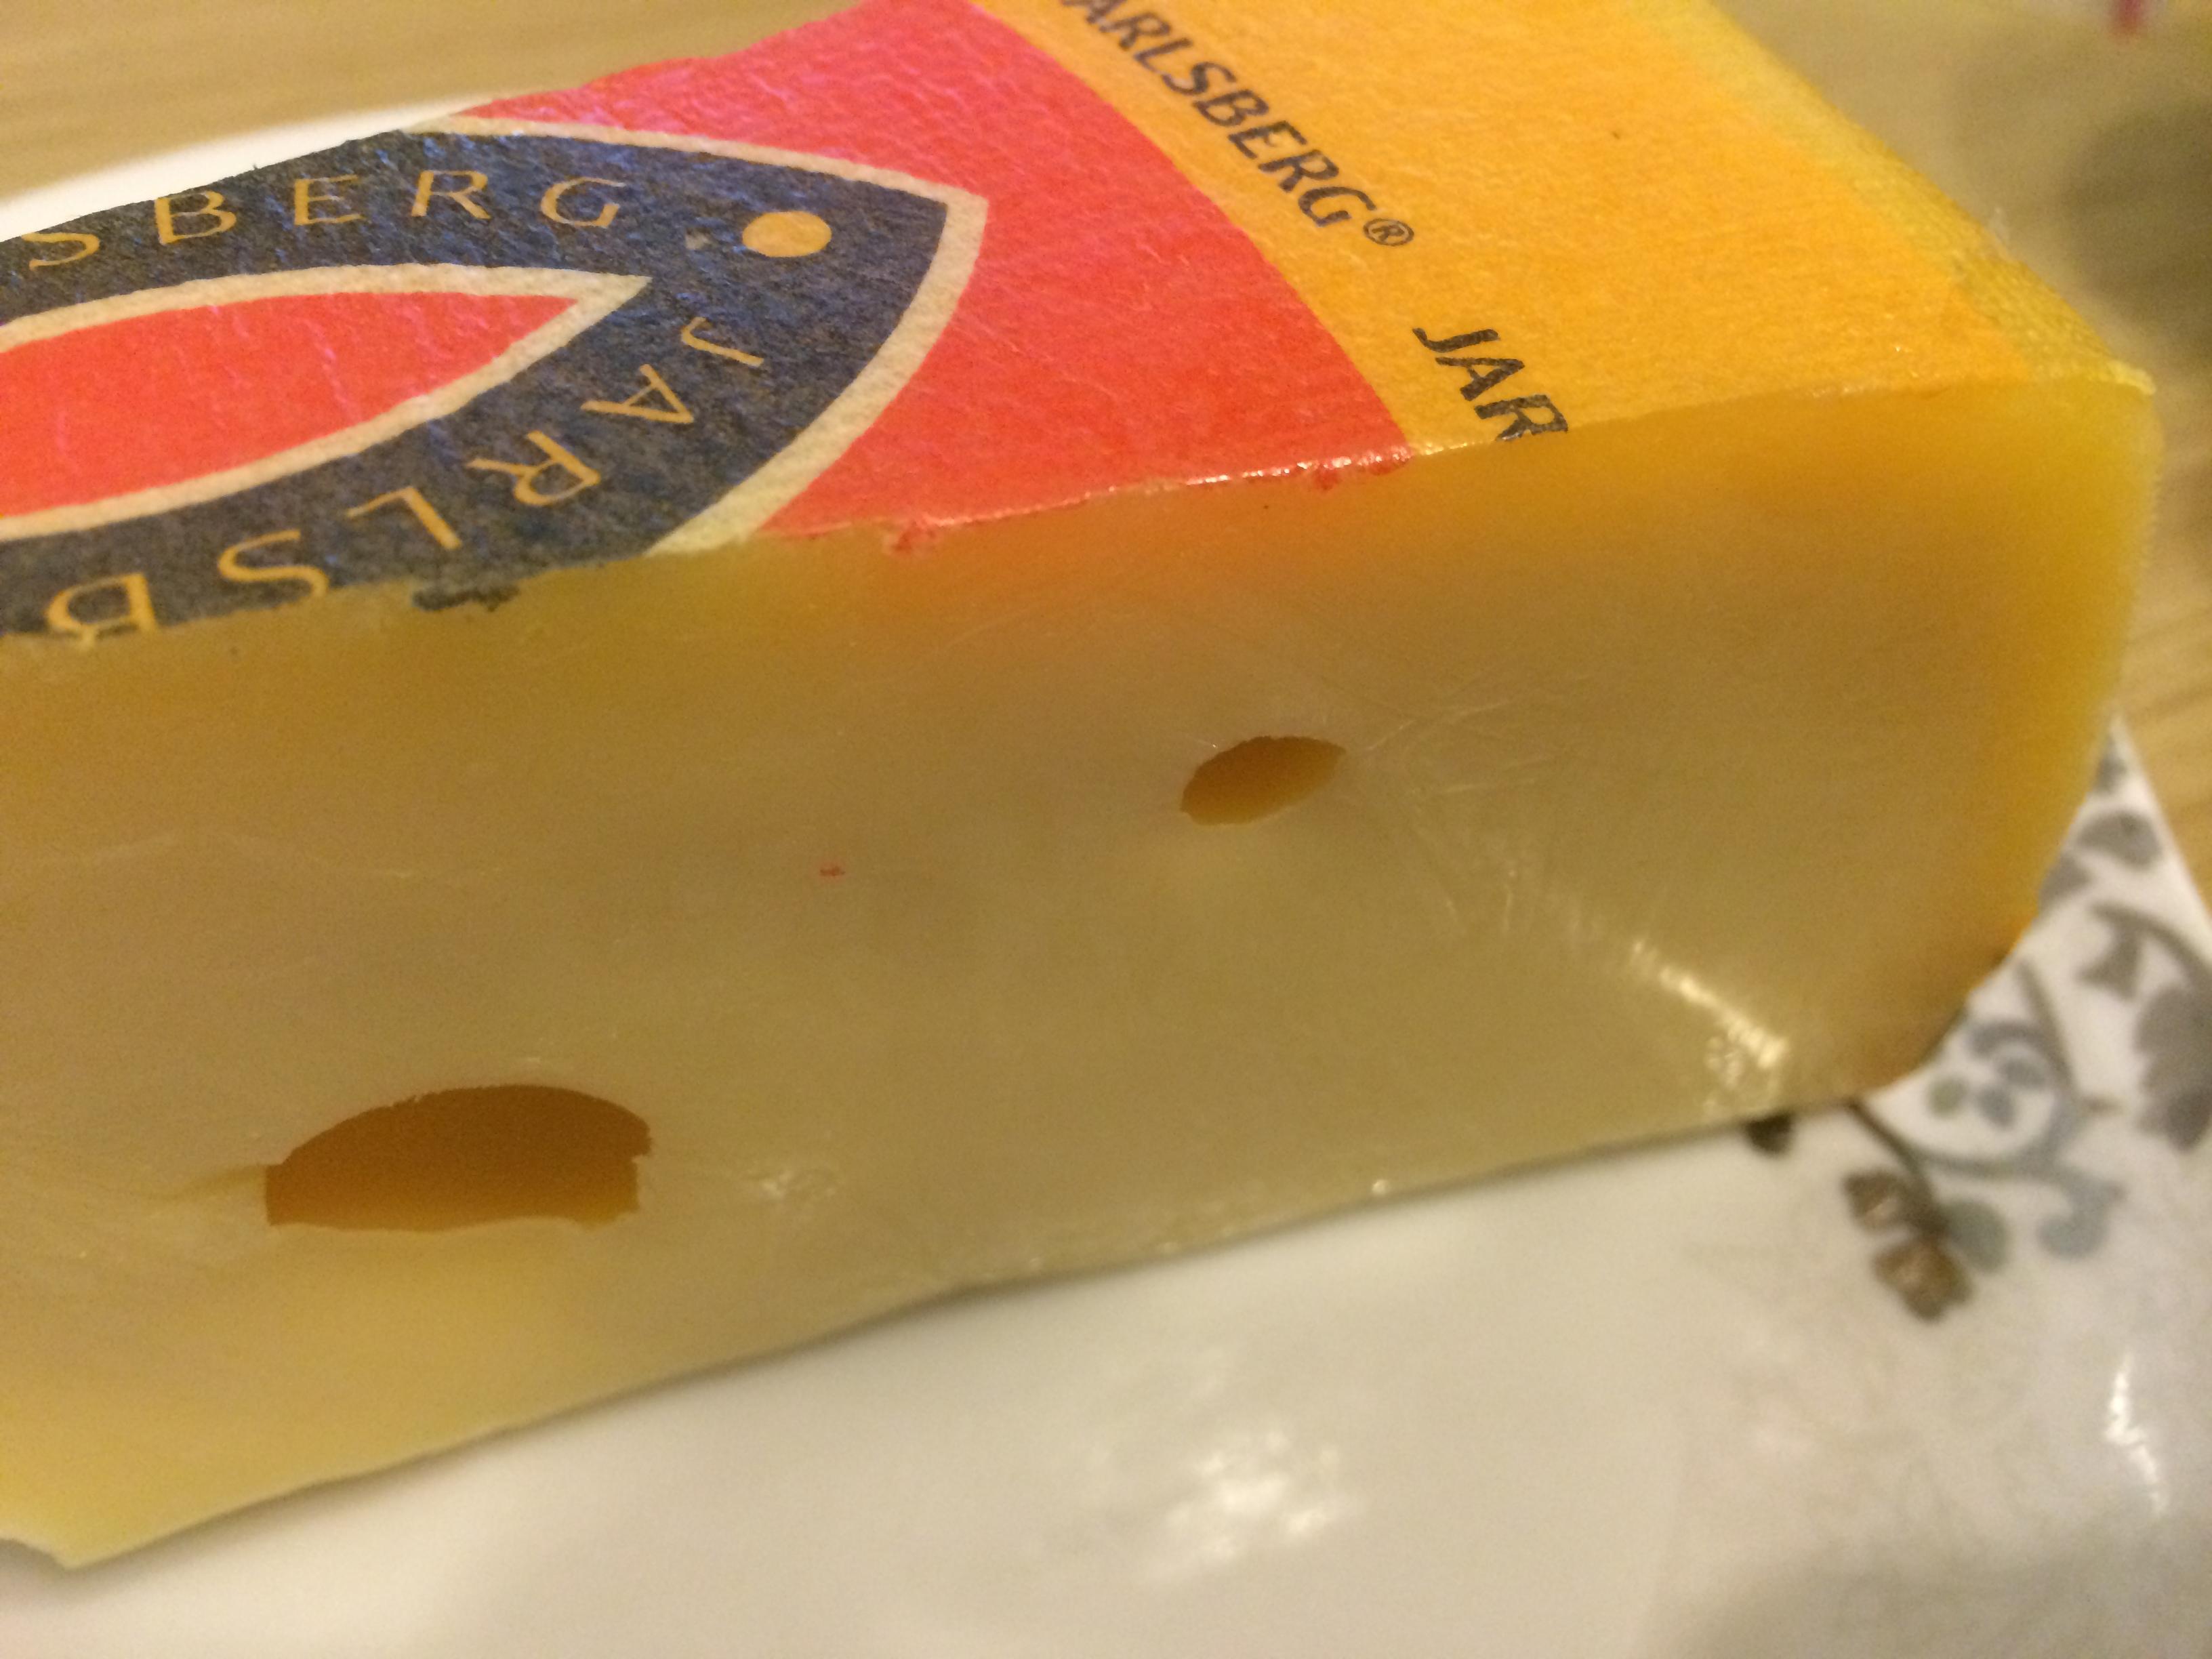 奶酪专辑 － Brie布里奶酪的多样吃法